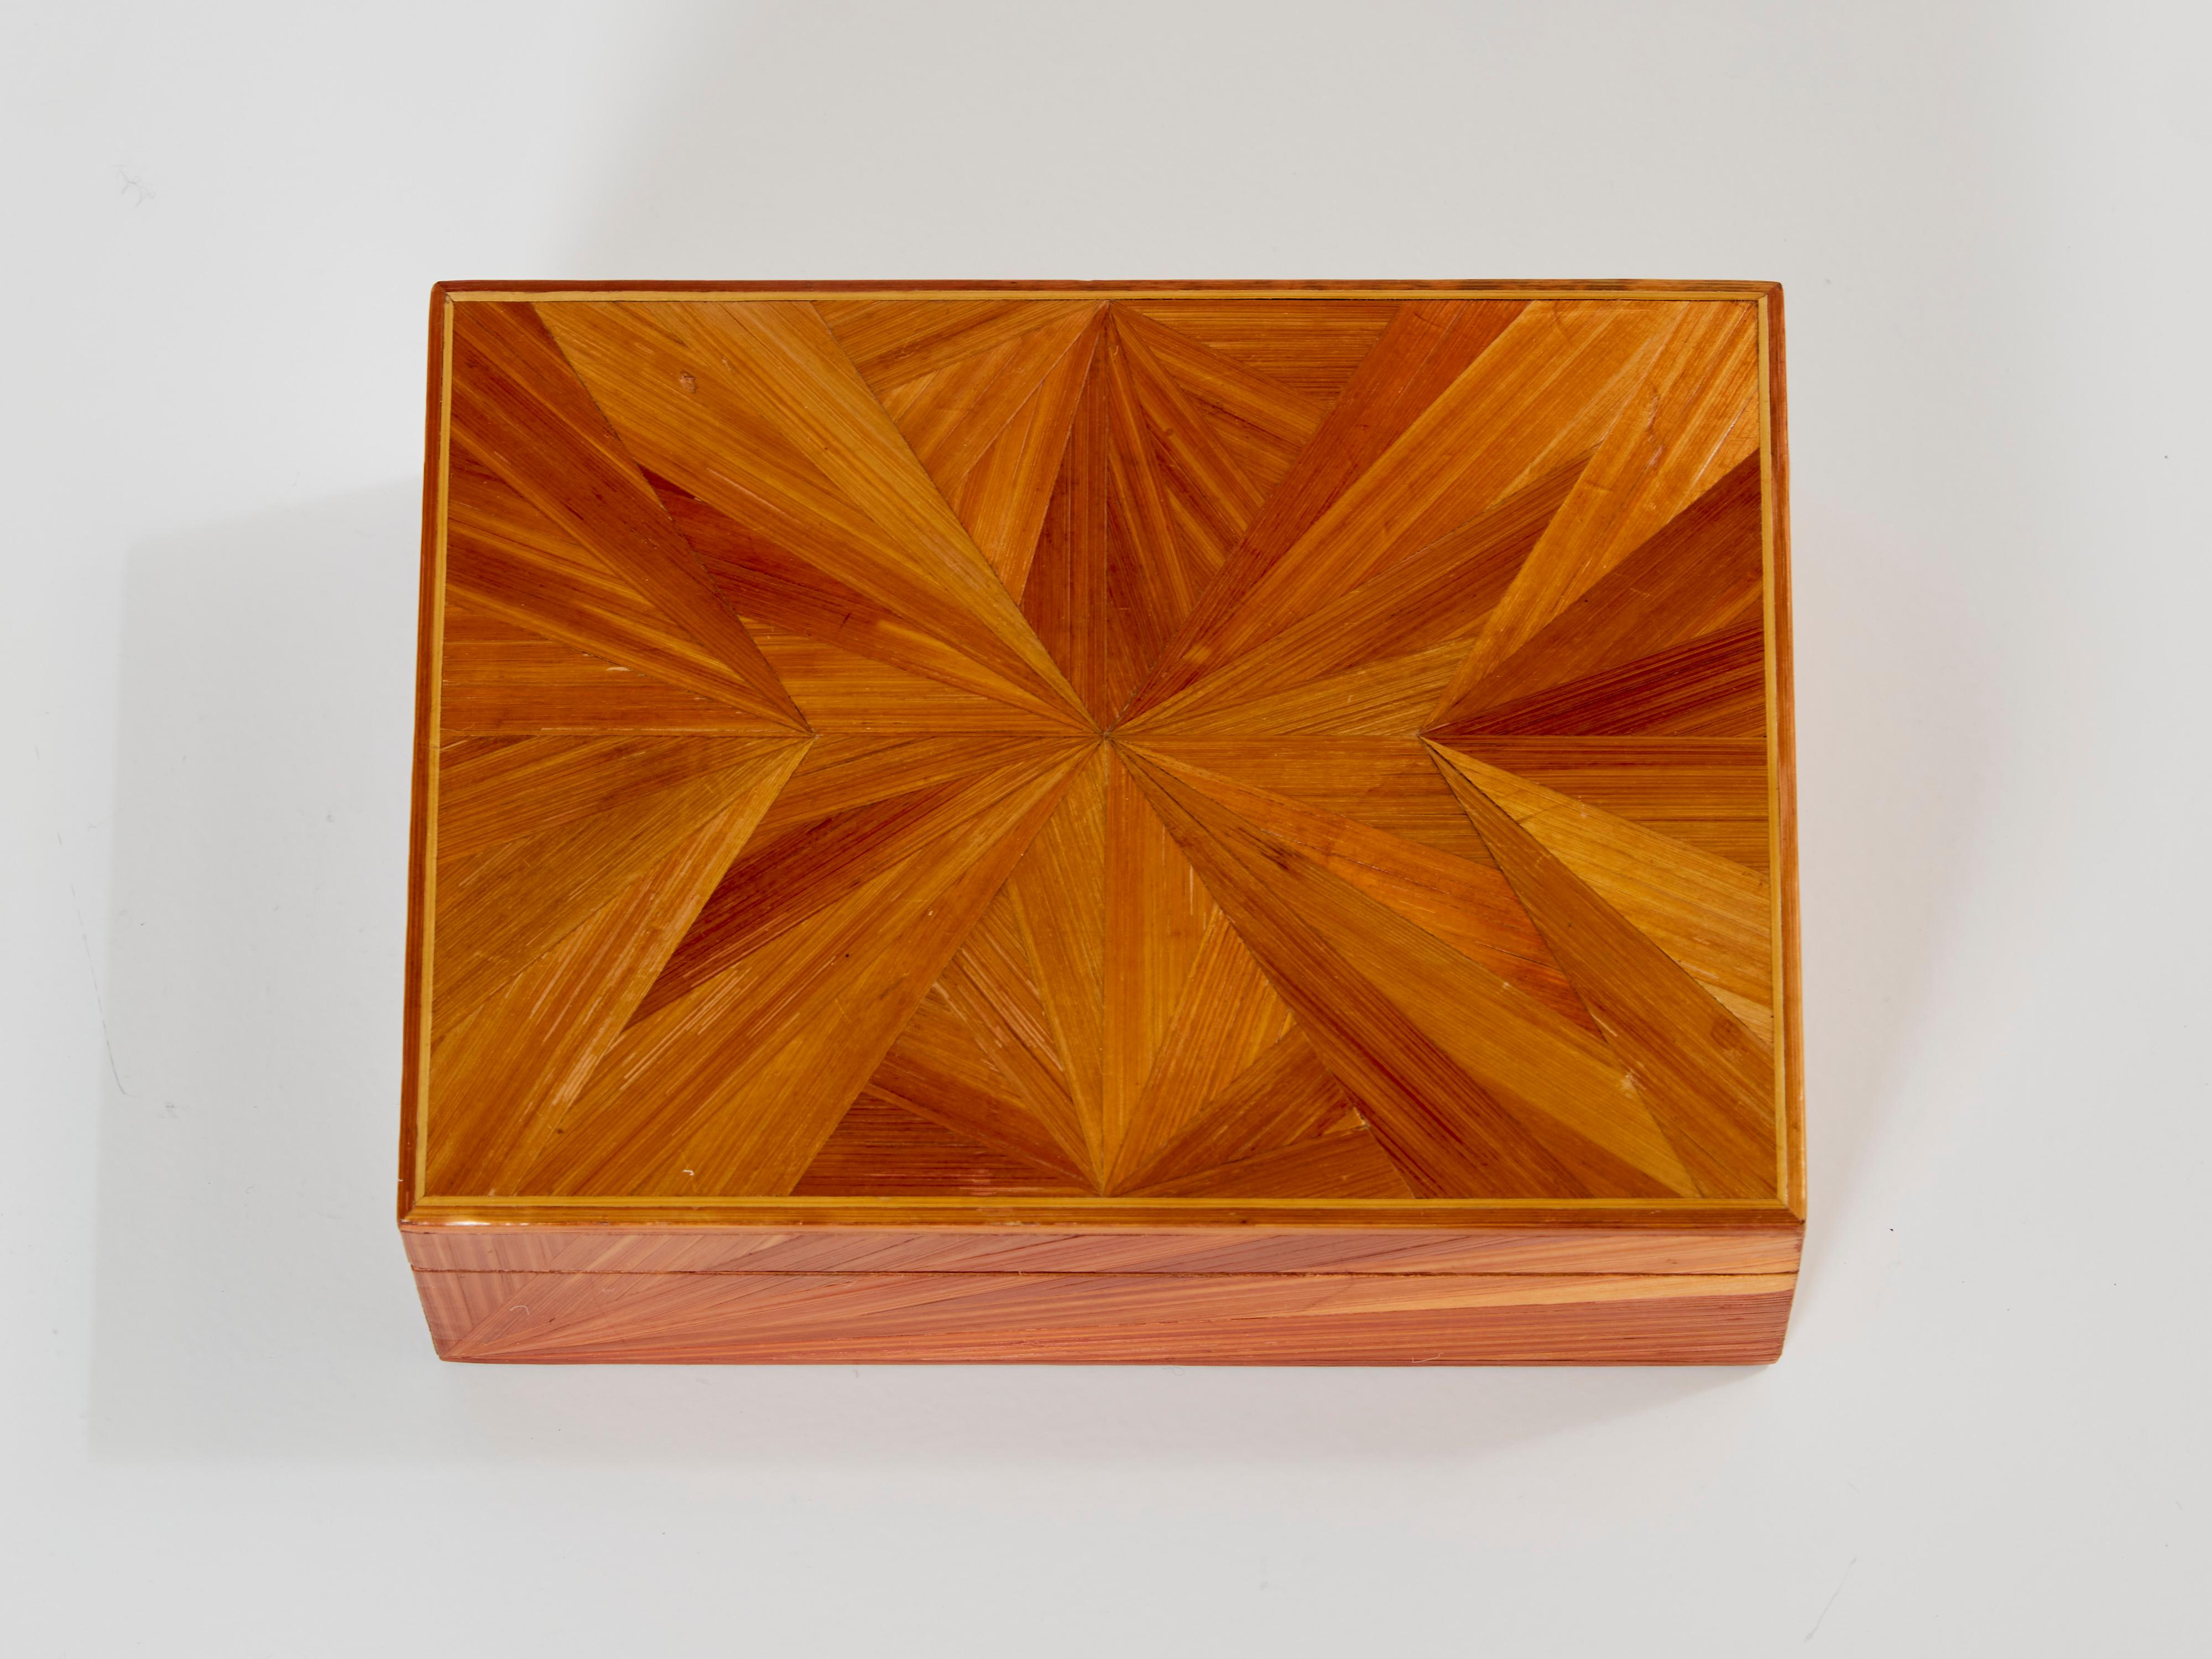 Belle boîte décorative en marqueterie de paille de Jean-Michel Frank des années 1930. Sculpté en bois de hêtre entièrement recouvert de marqueterie de paille avec des motifs rayonnants. Il a été entièrement restauré, il ne reste que de légères